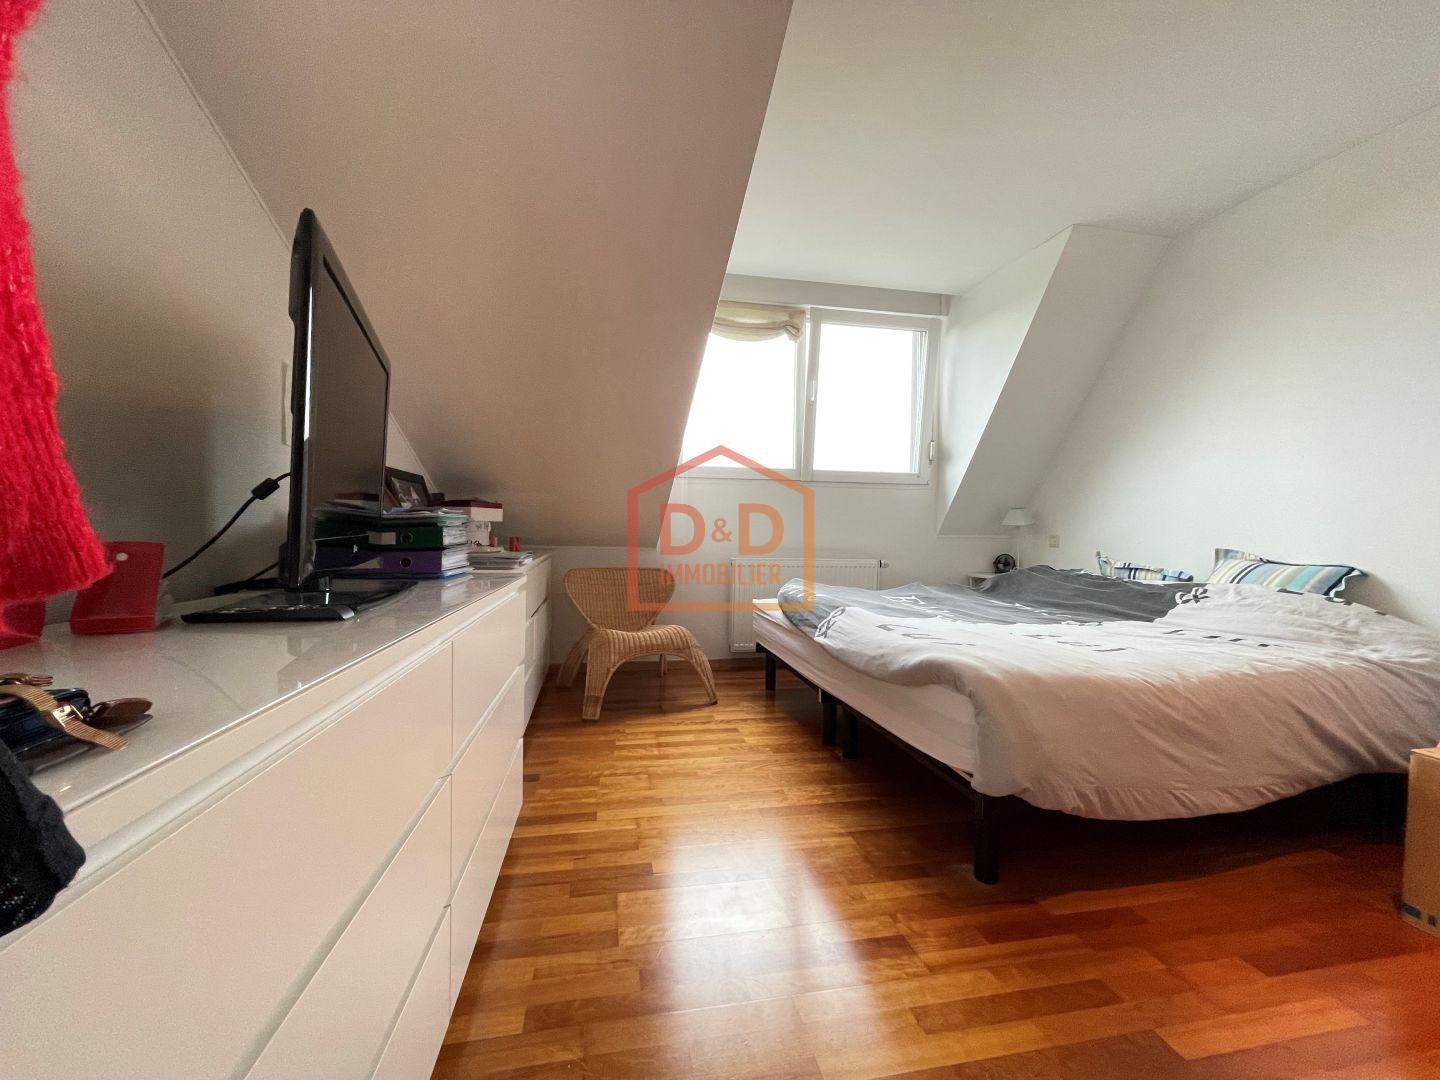 Appartement à Leudelange, 147,27 m², 4 chambres, 2 salles de bain, 1 garage, 1 340 000 €